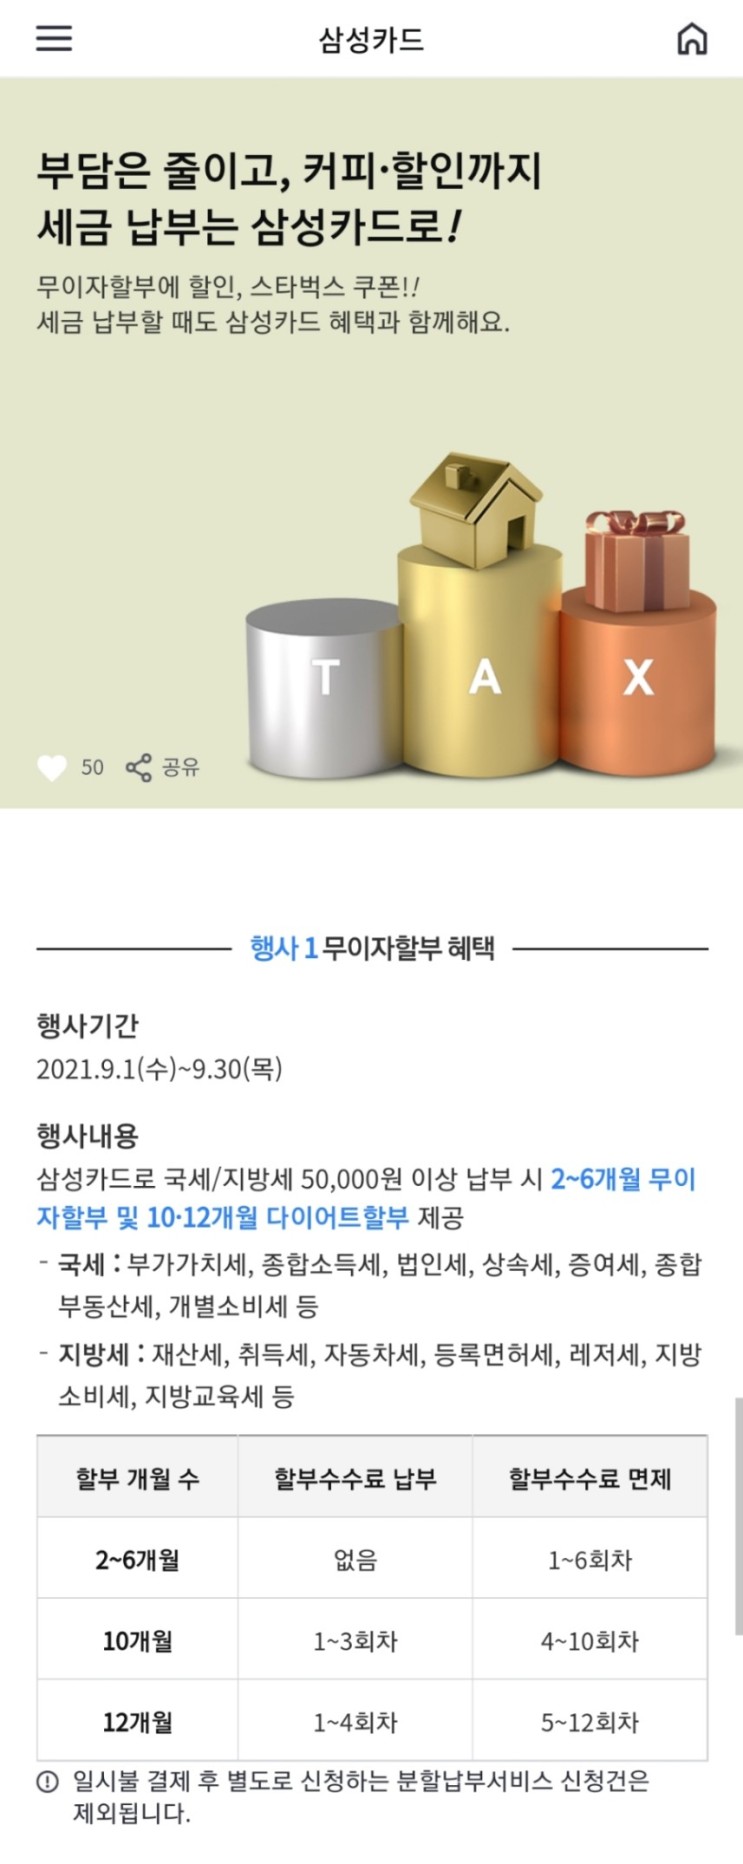 삼성카드 LINK 지방세 납부 스타벅스 아메리카노 제공 이벤트(9/13~9/30)